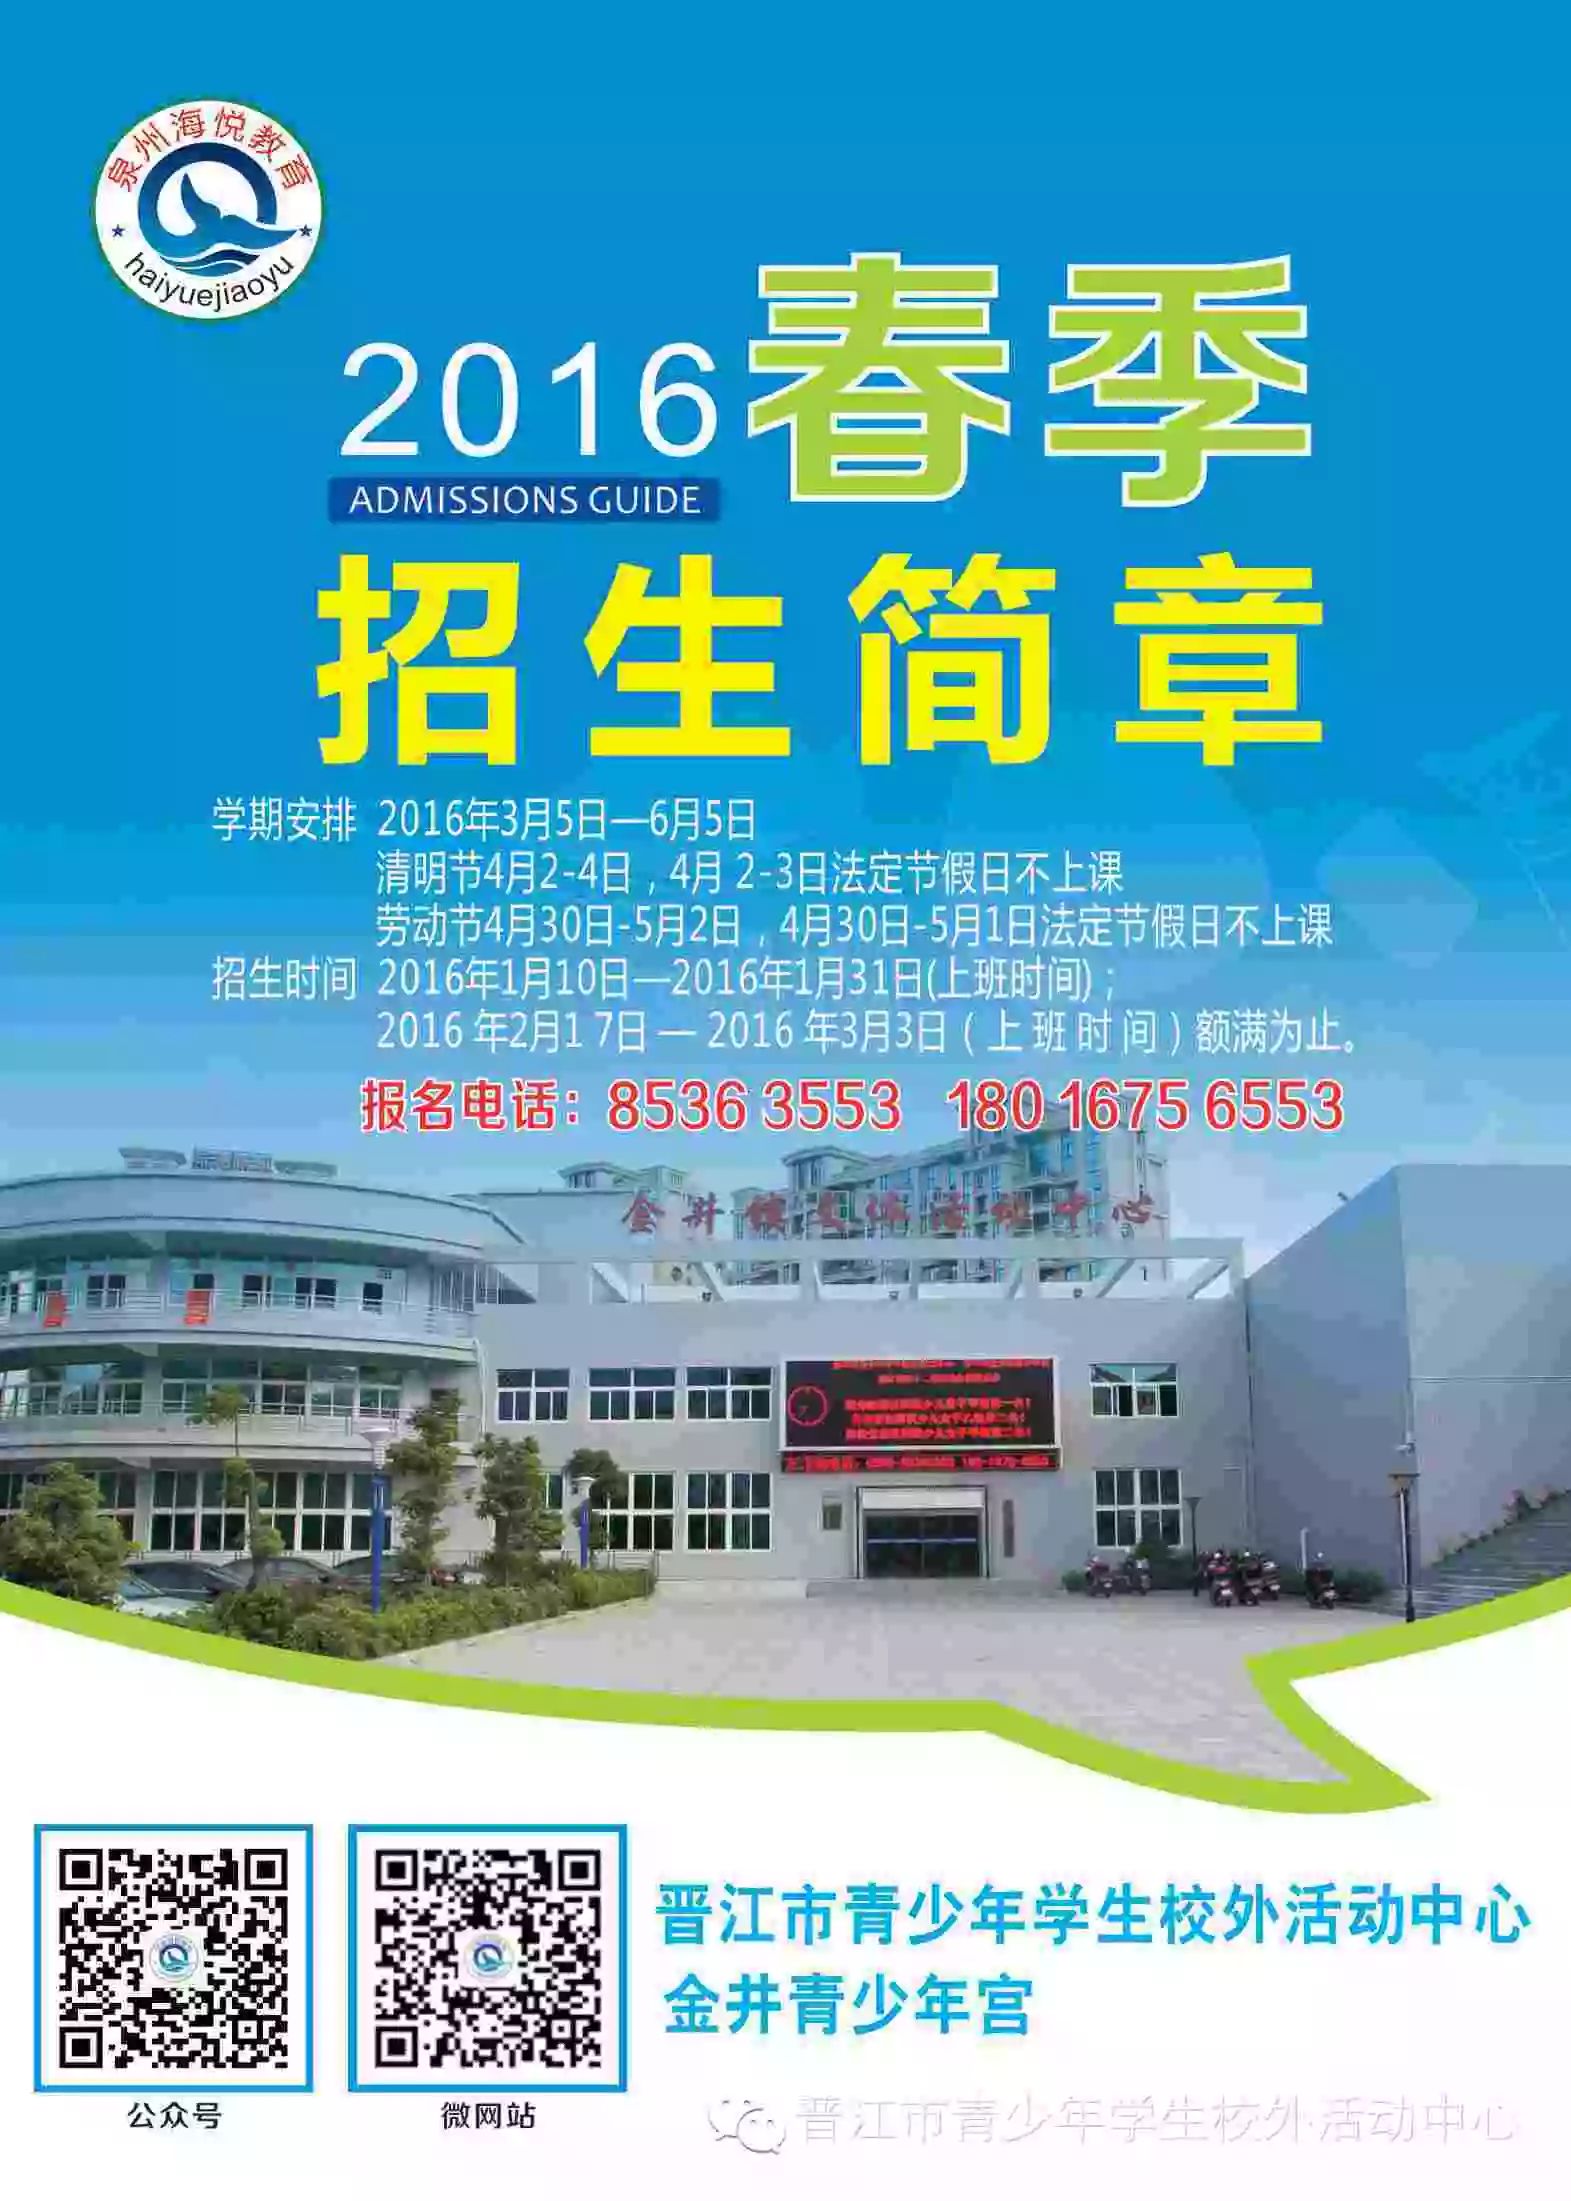 晋江市校外活动中心2016年春季招生开始啦！